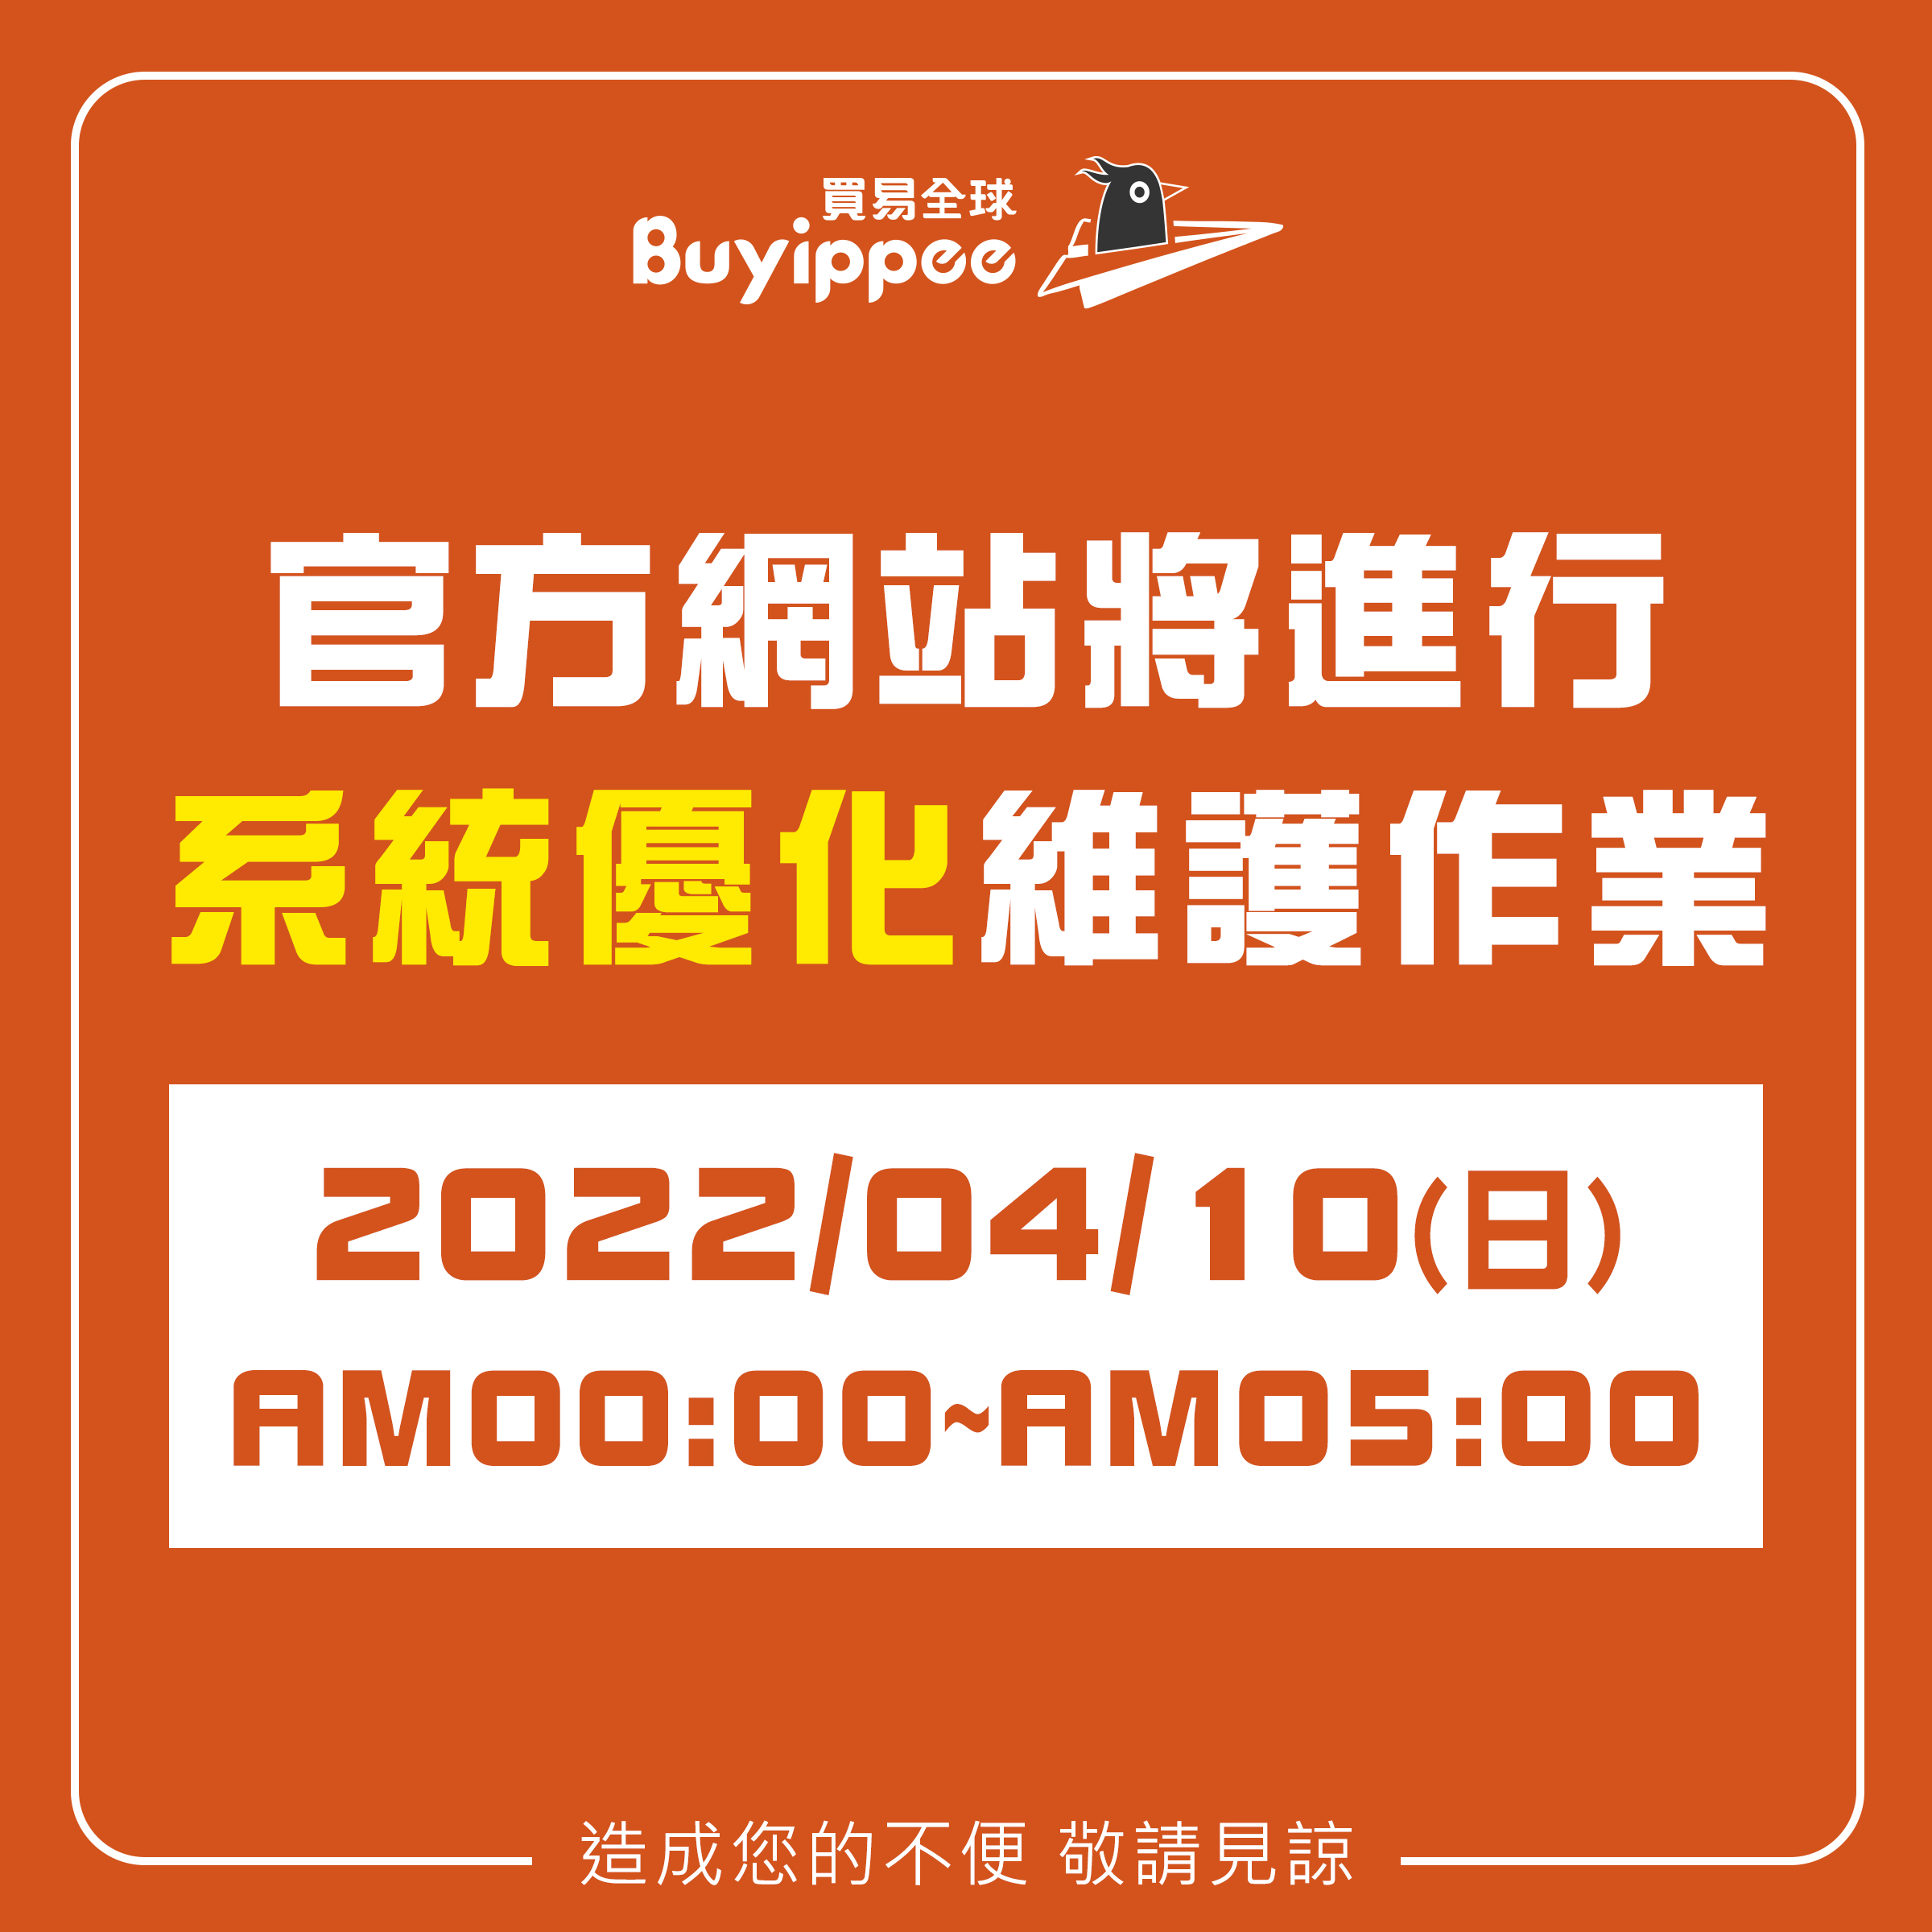 【buyippee公告】官網進行系統優化維護作業